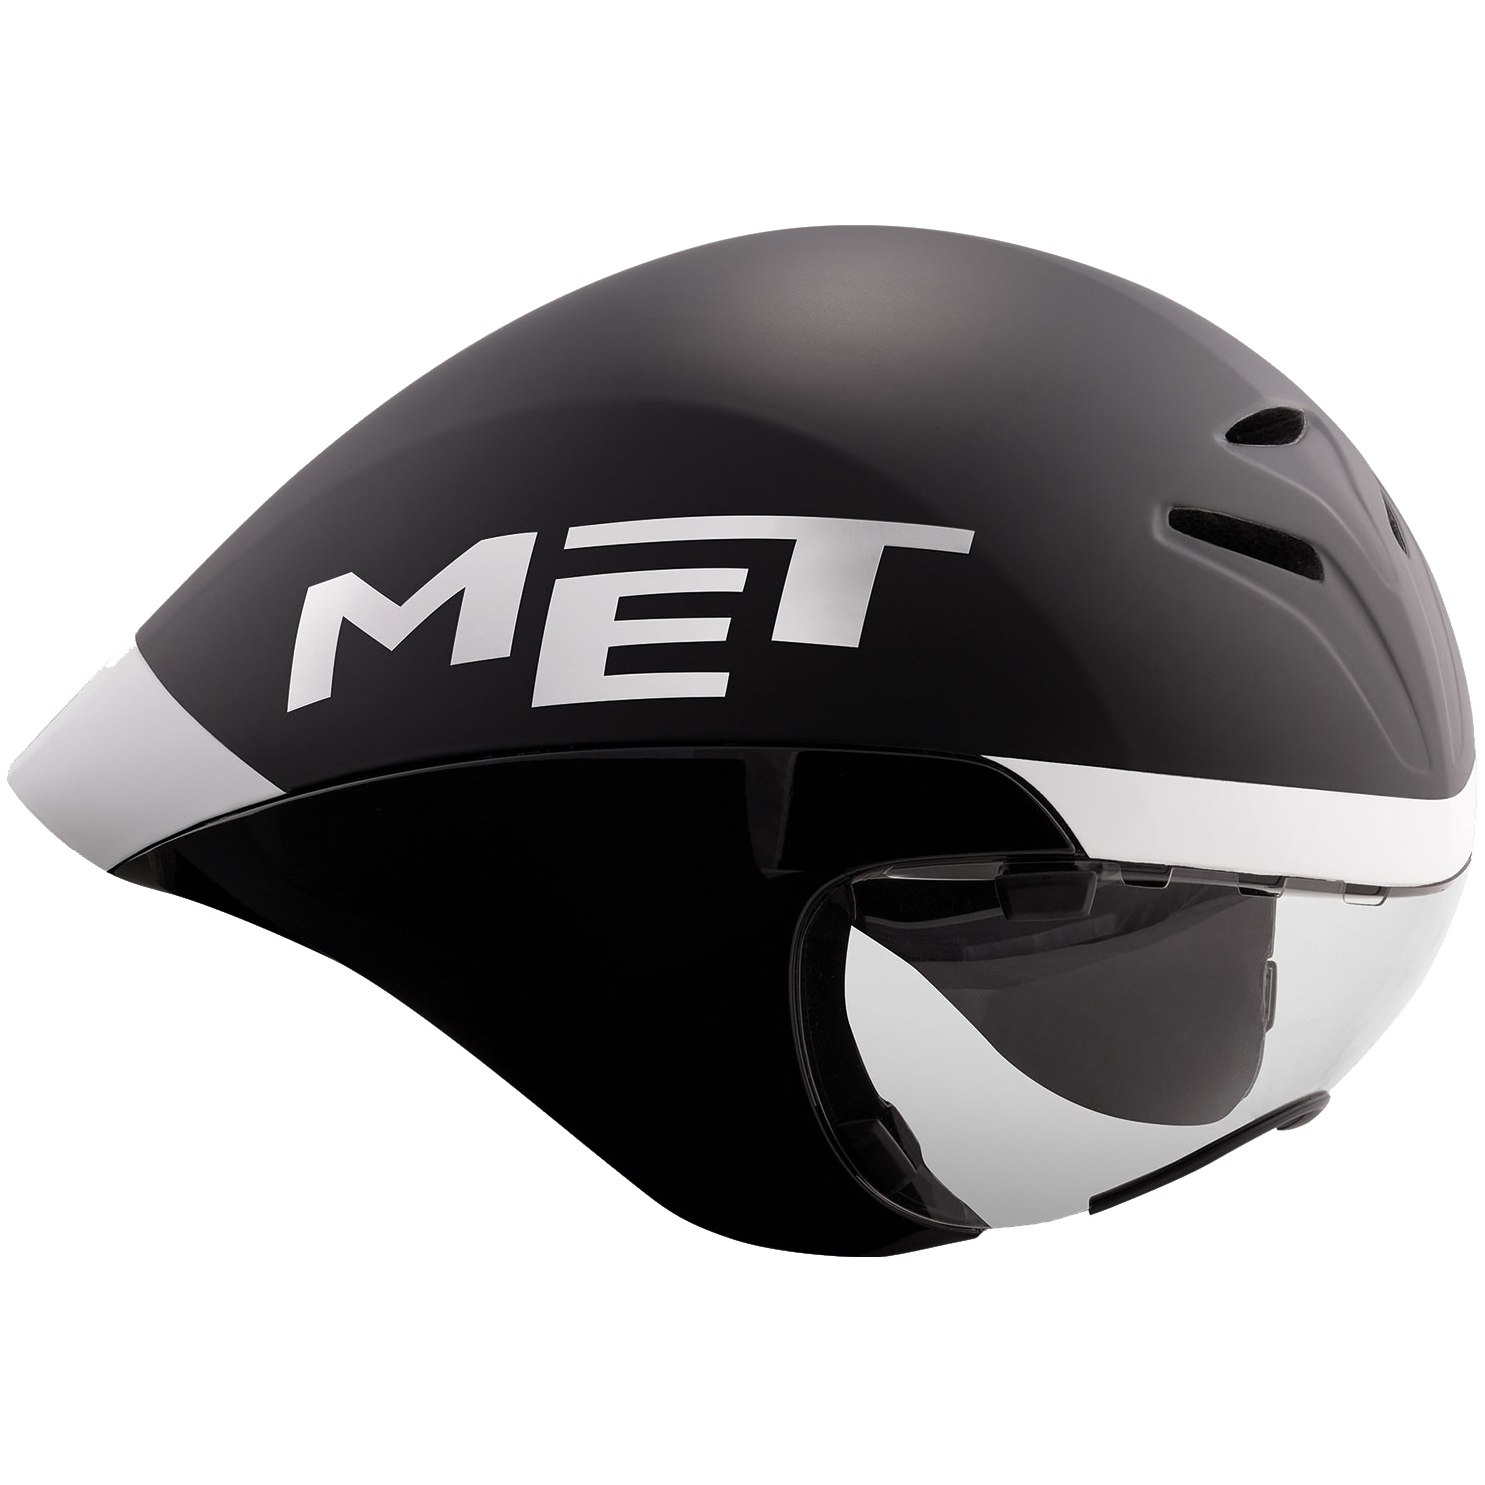 Produktbild von MET Drone Wide Body Helm - Schwarz / Weiß